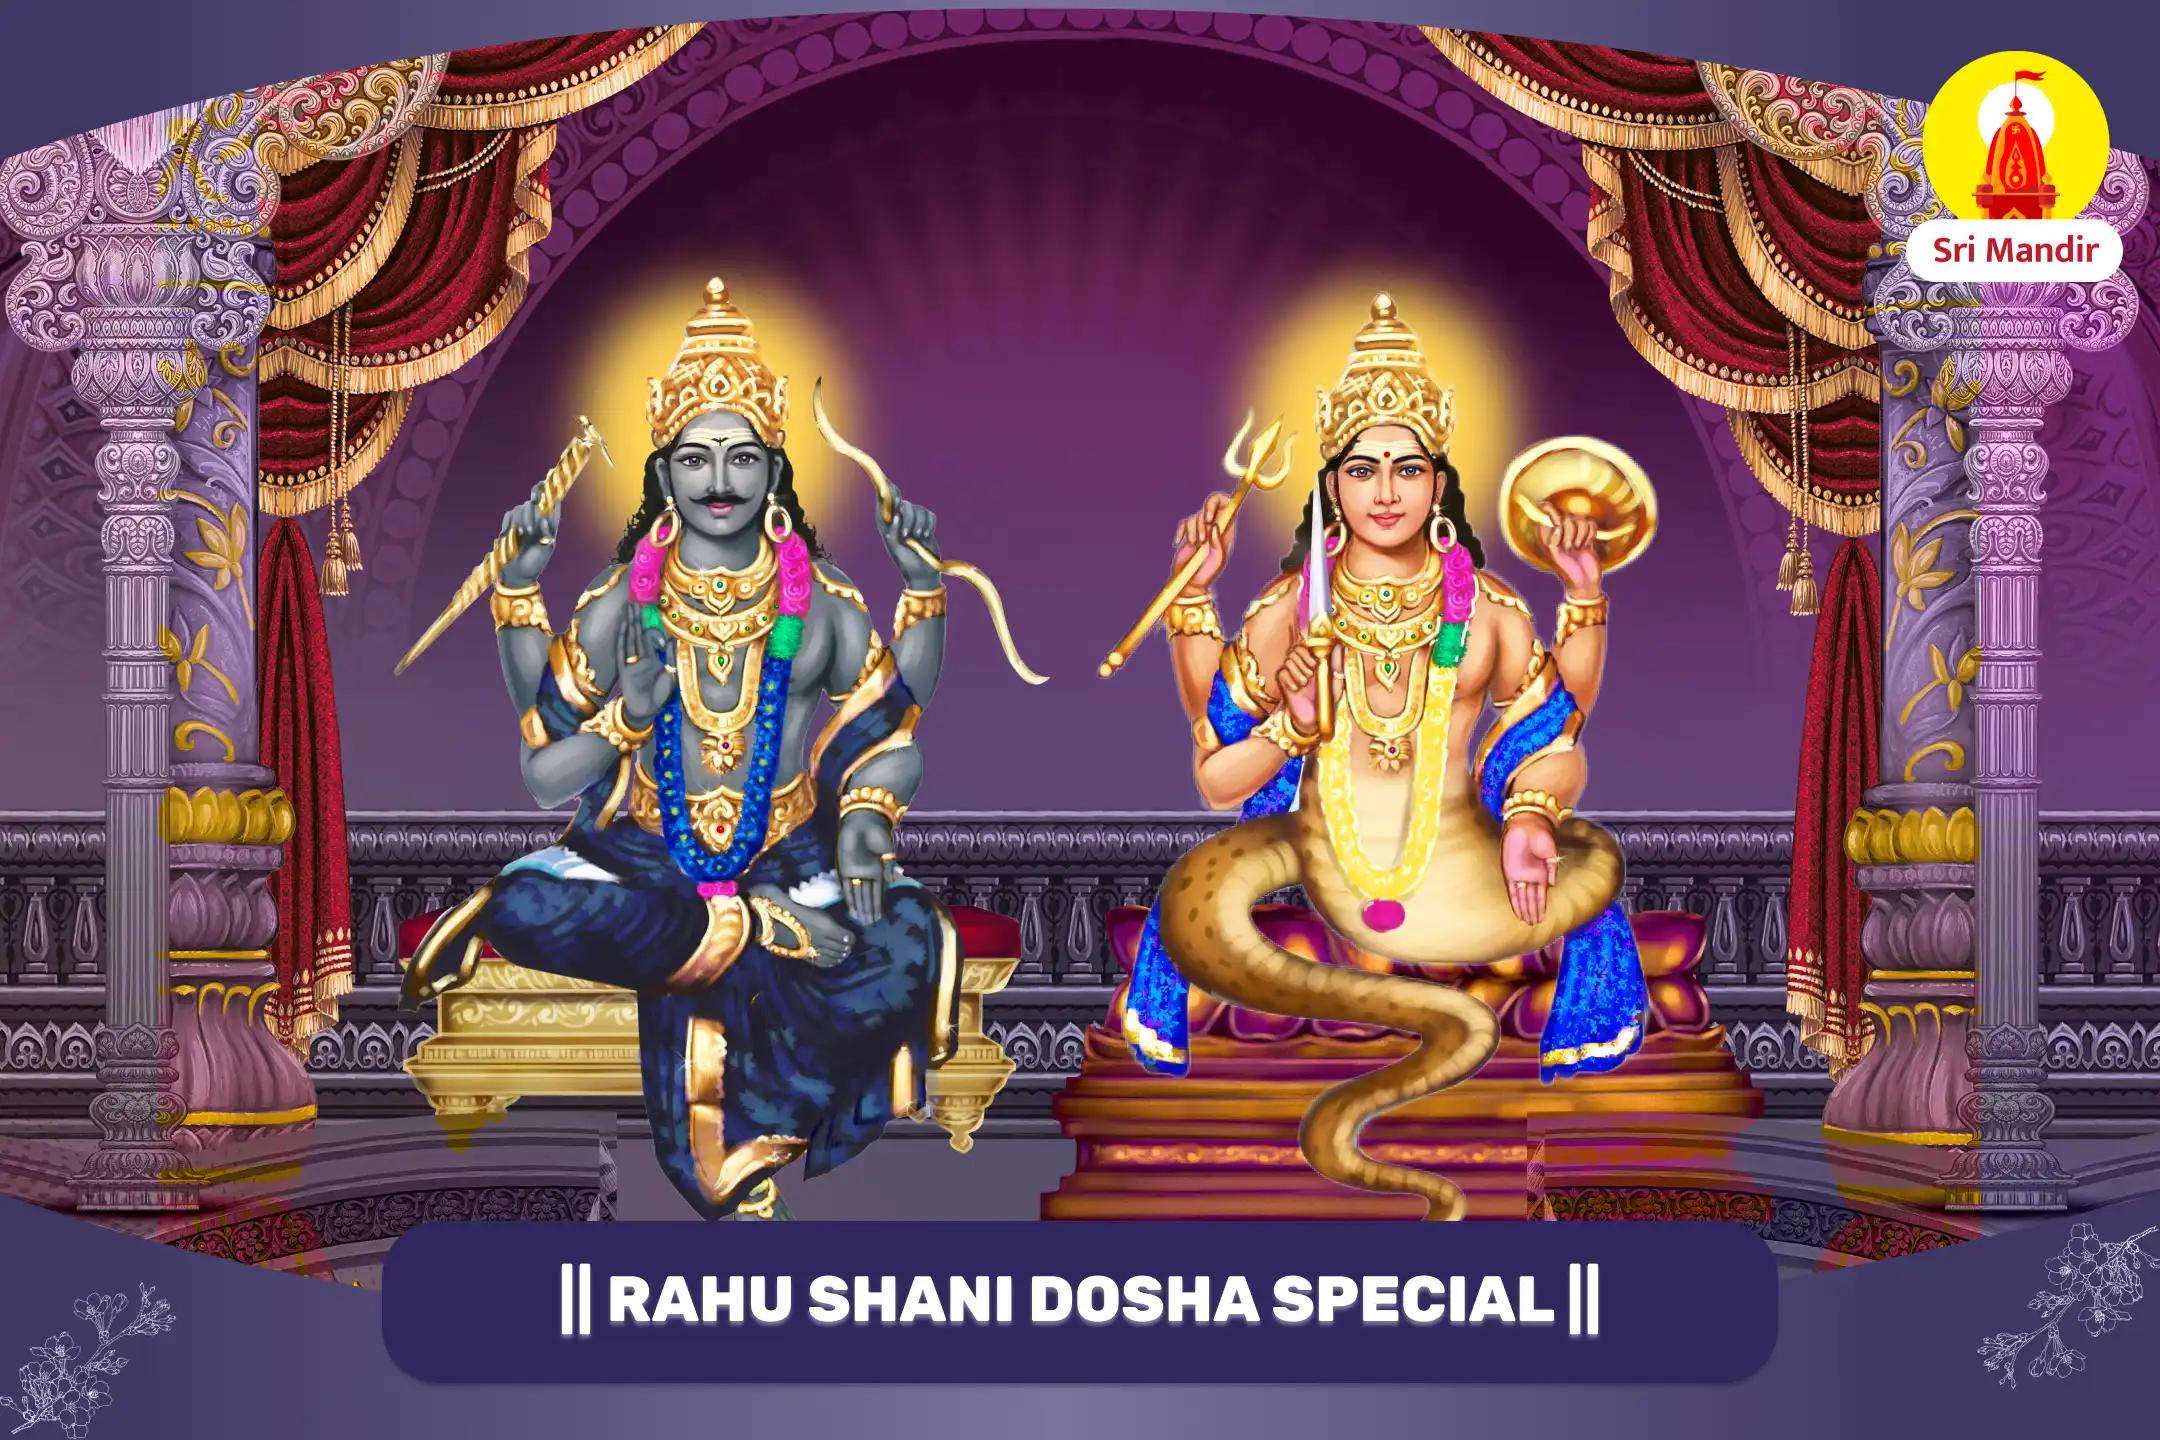 Rahu-Shani Dosha Shanti Puja And Shiva Mahabhishek for Career Stability and Financial Prosperity